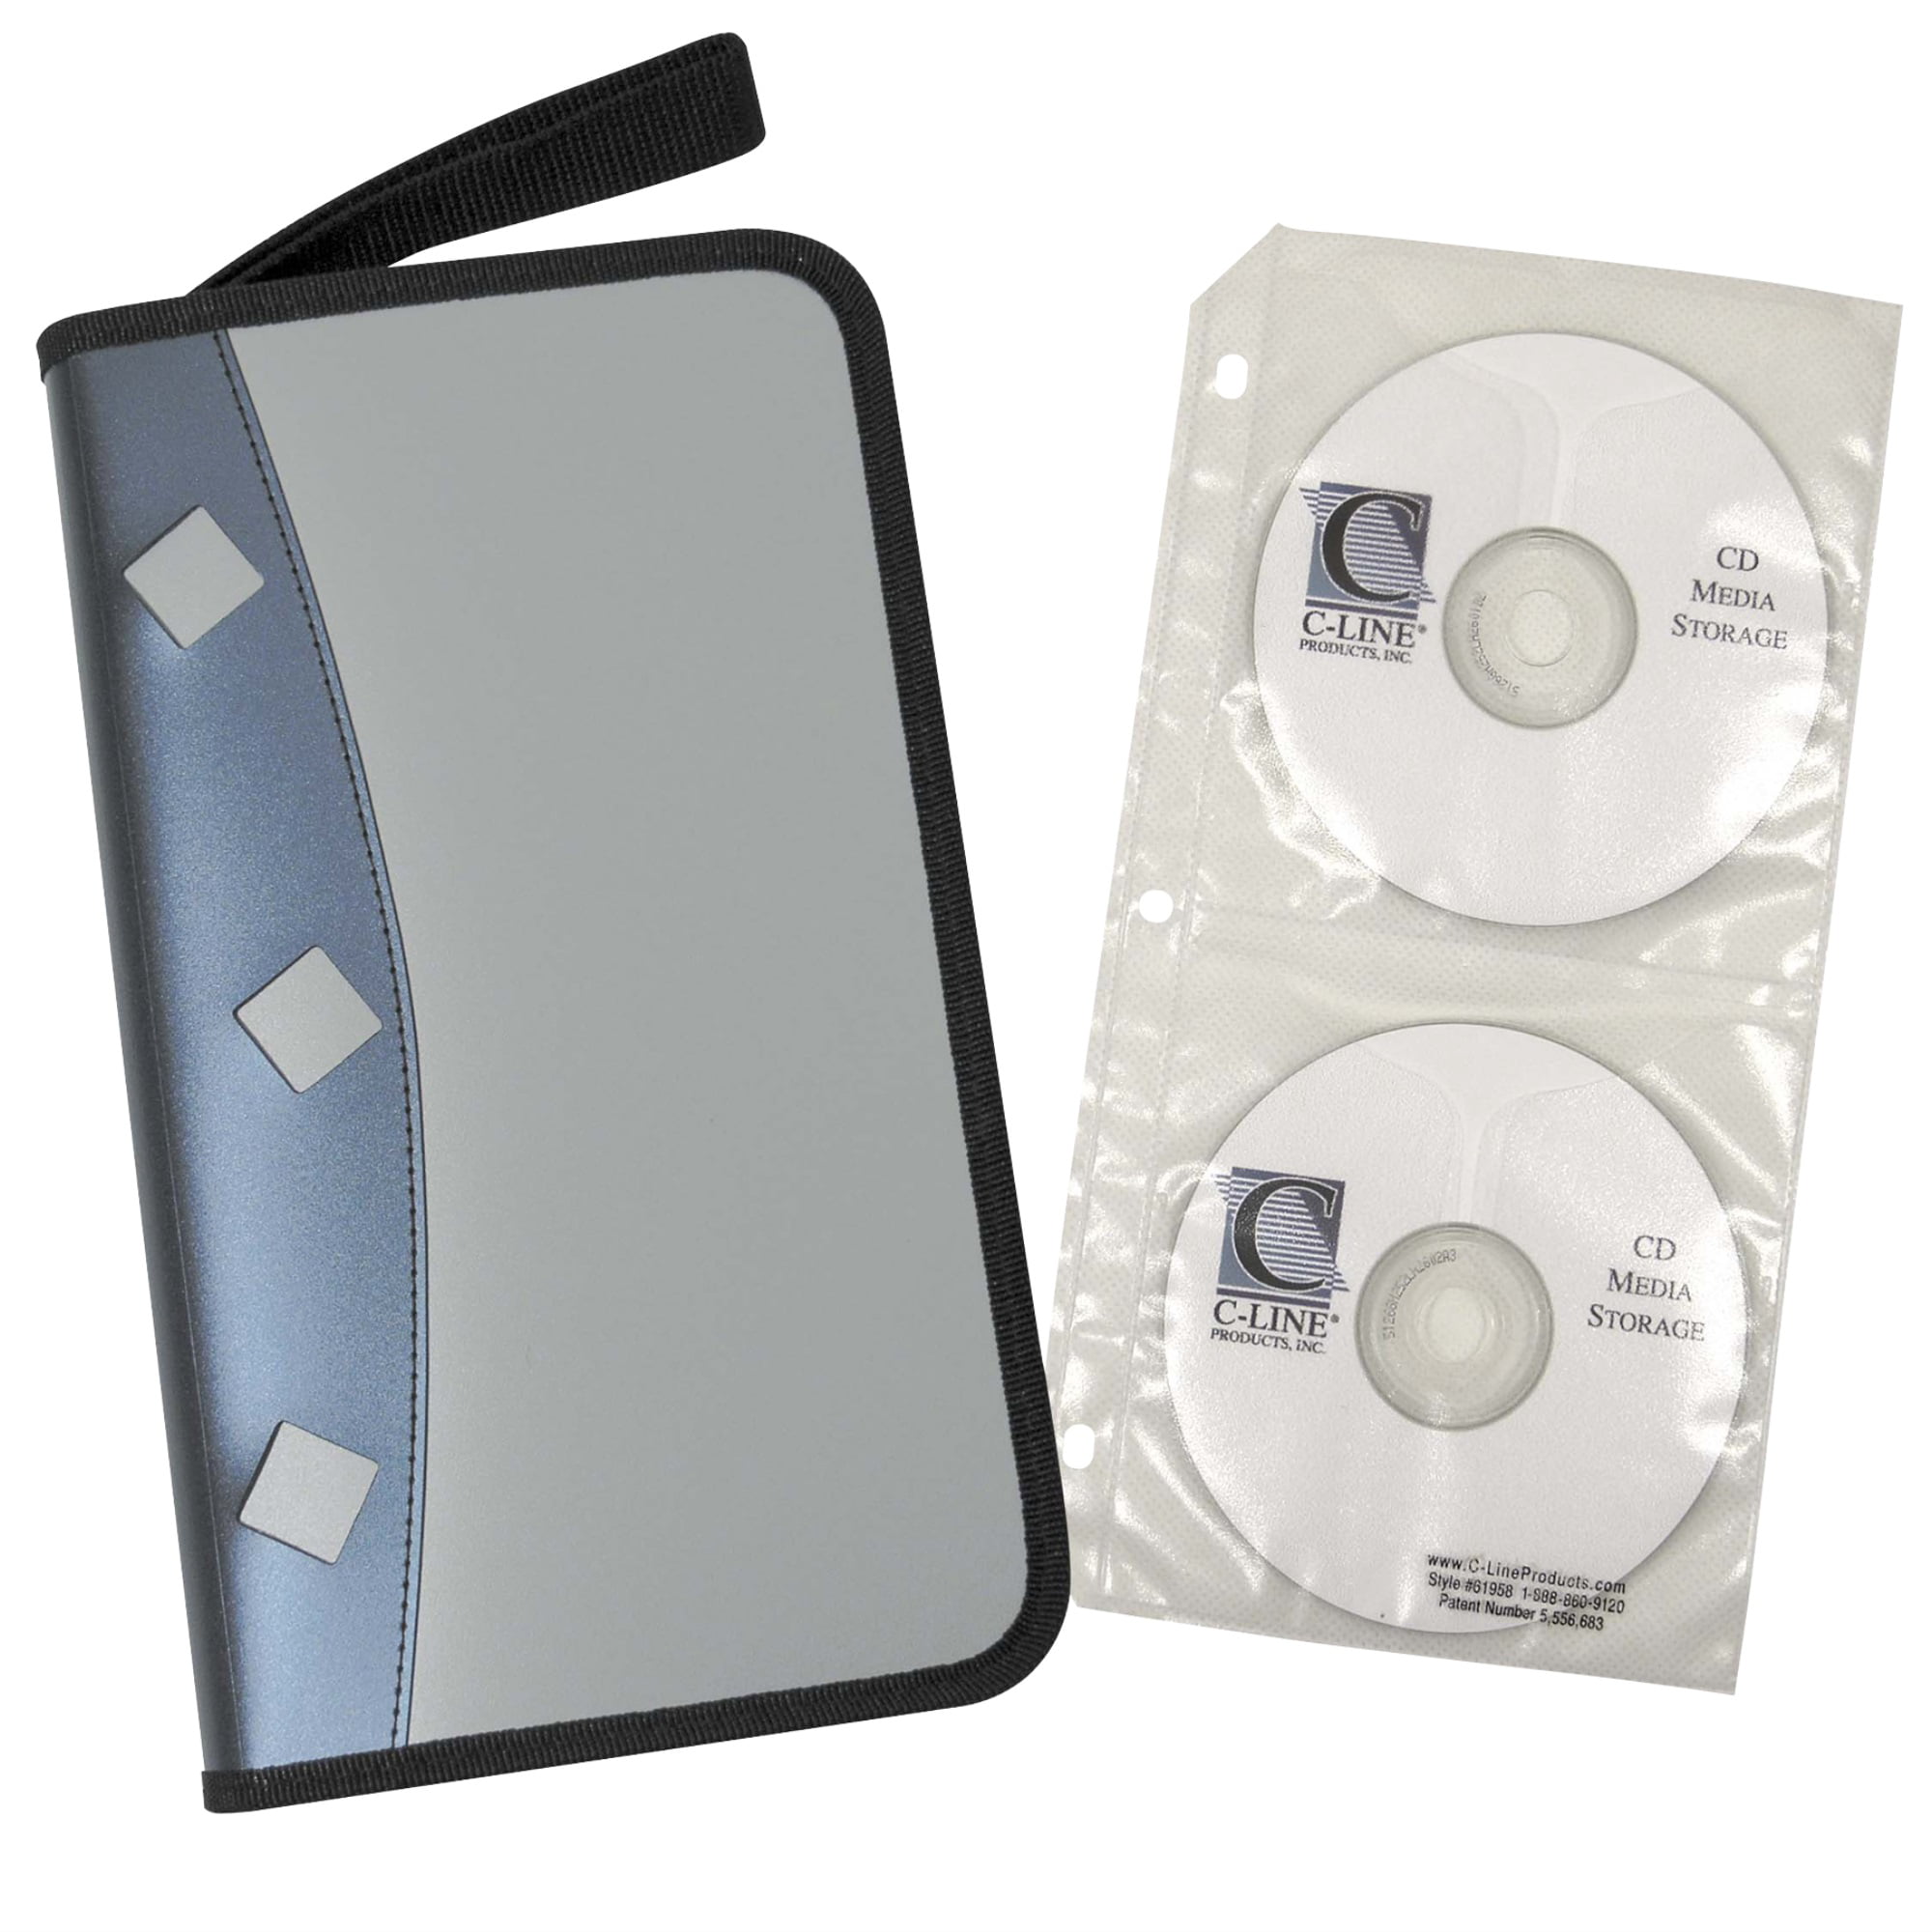 KIT DE LIMPIEZA PARA LECTOR CD/DVD - Folder, Líder en papelería